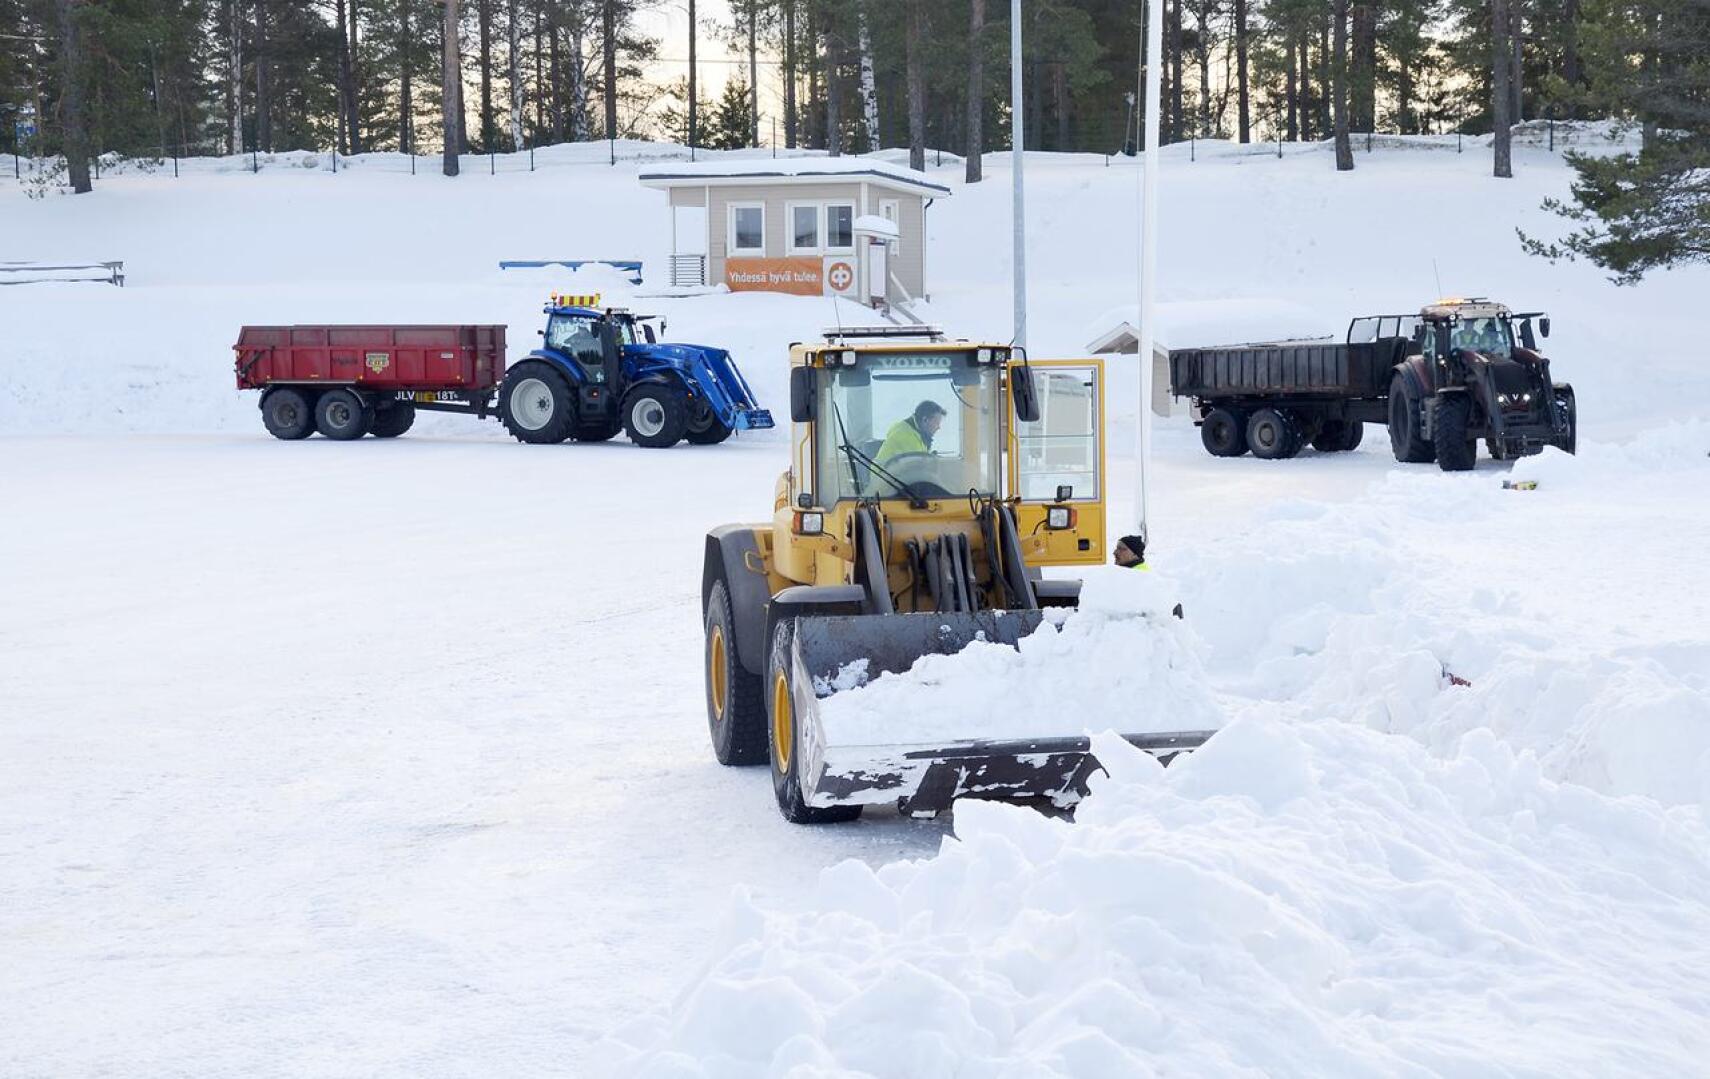 Oulaisten kaupungin tekninen toimi ostaa paikallisilta koneurakoitsijoilta muun muassa lumenajoa, jota menneenä talvena oli paljon.